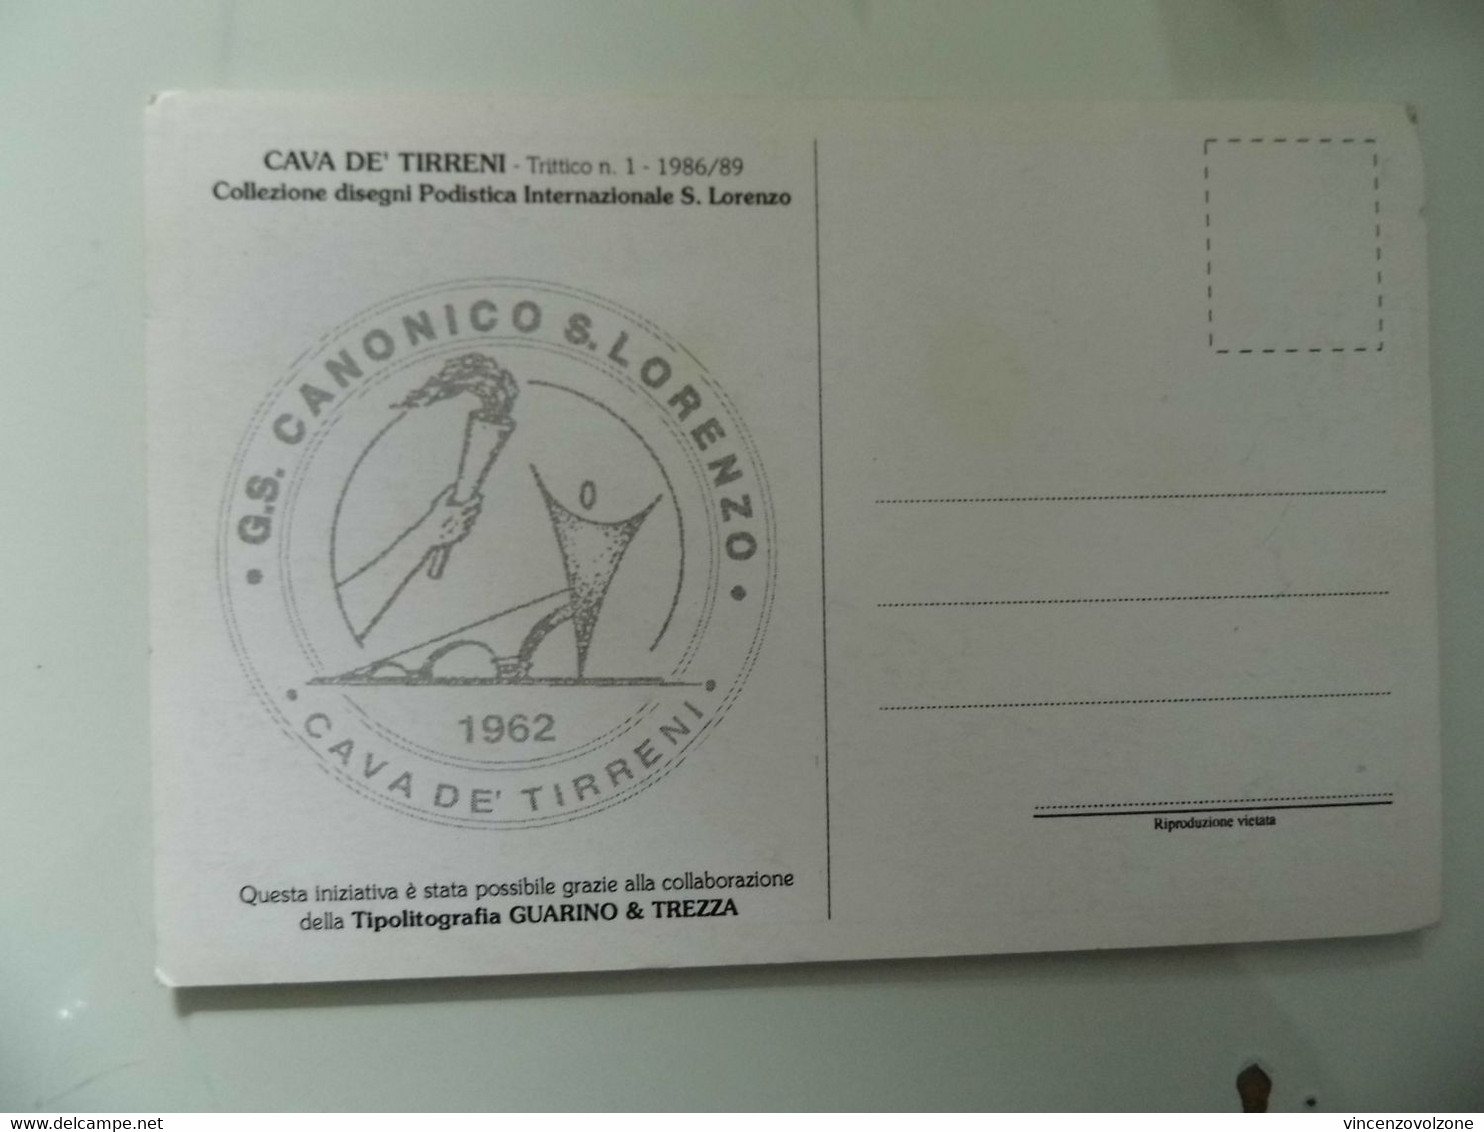 Cartolina "CAVA DEI TIRRENI Trittico N.1 1986/89 COLLEZIONE DISEGNI PODISTICA INTERNAZIONALE S. LORENZO" - Cava De' Tirreni